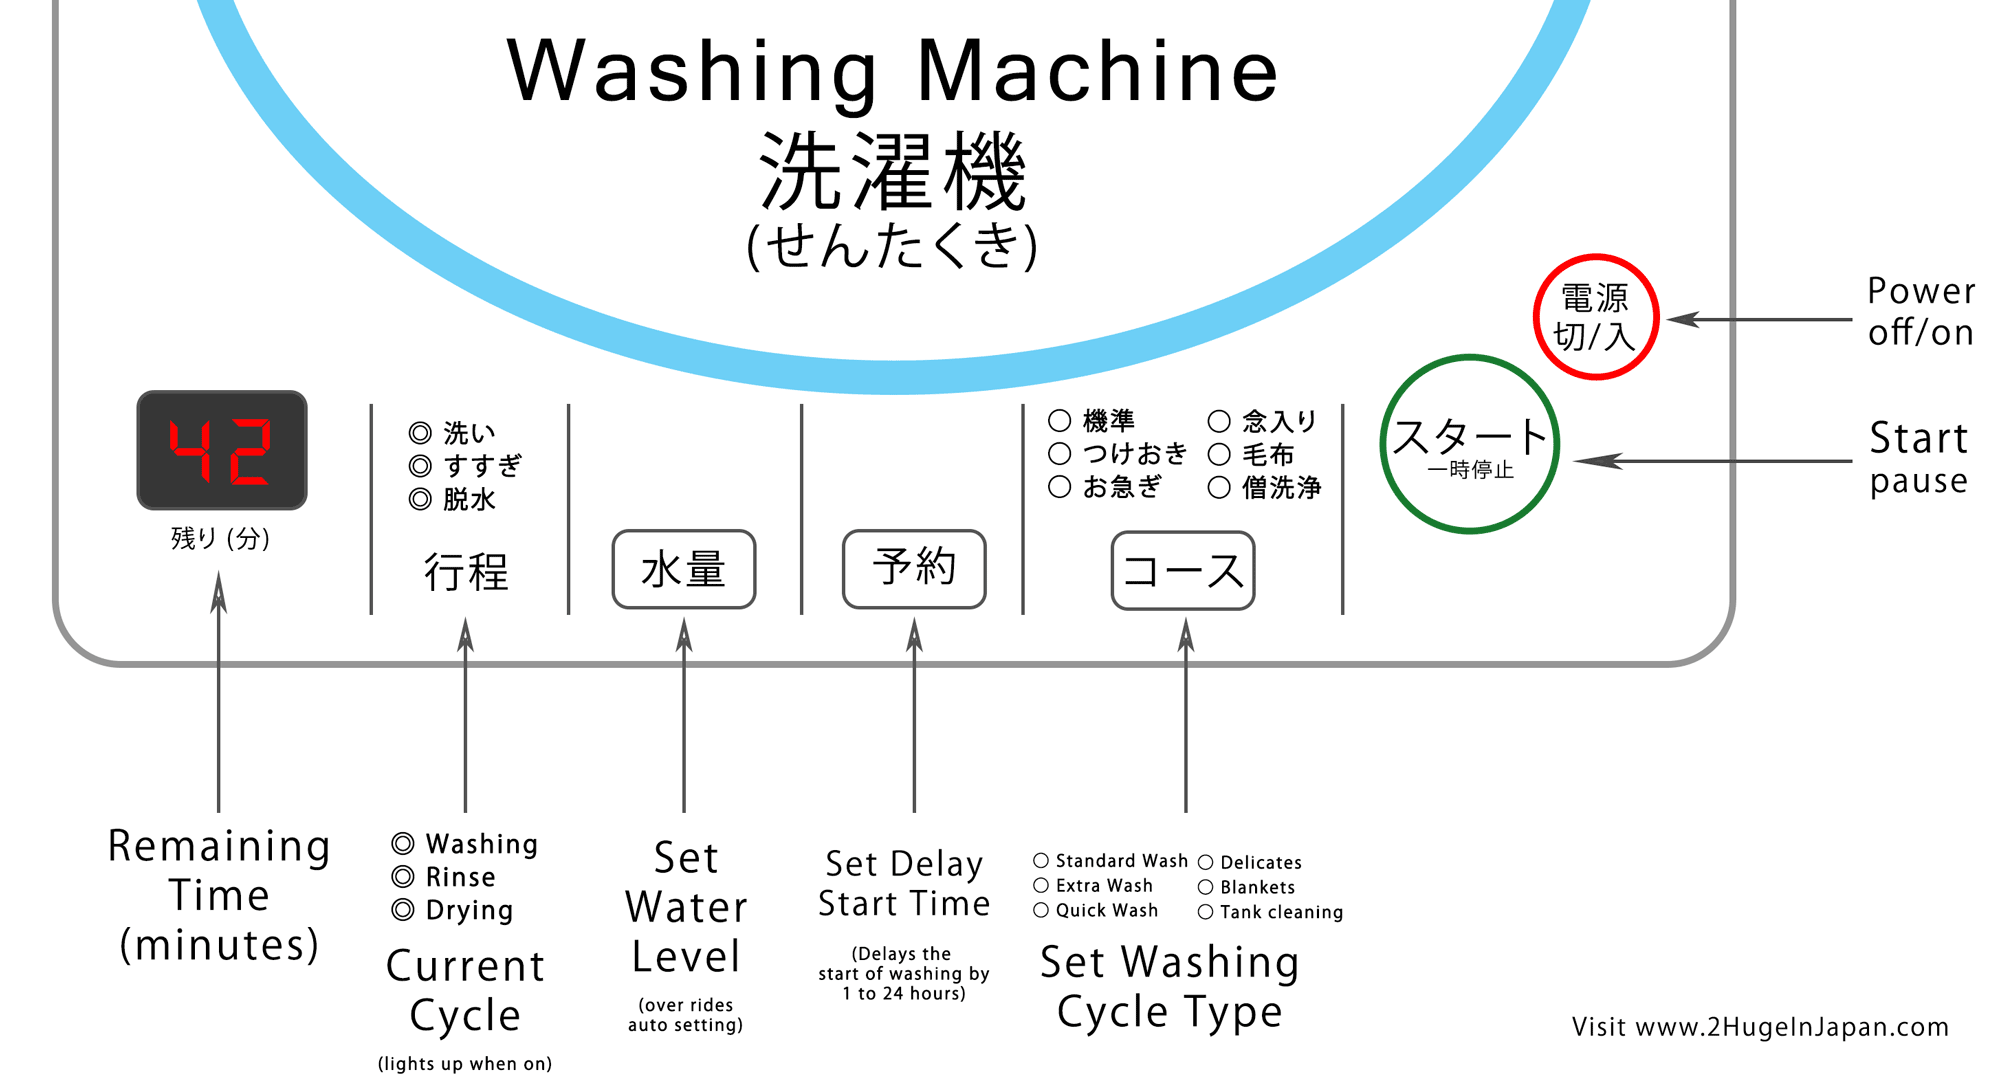 Is washing перевод. Washing Machine автомат желаний. Japan washing.